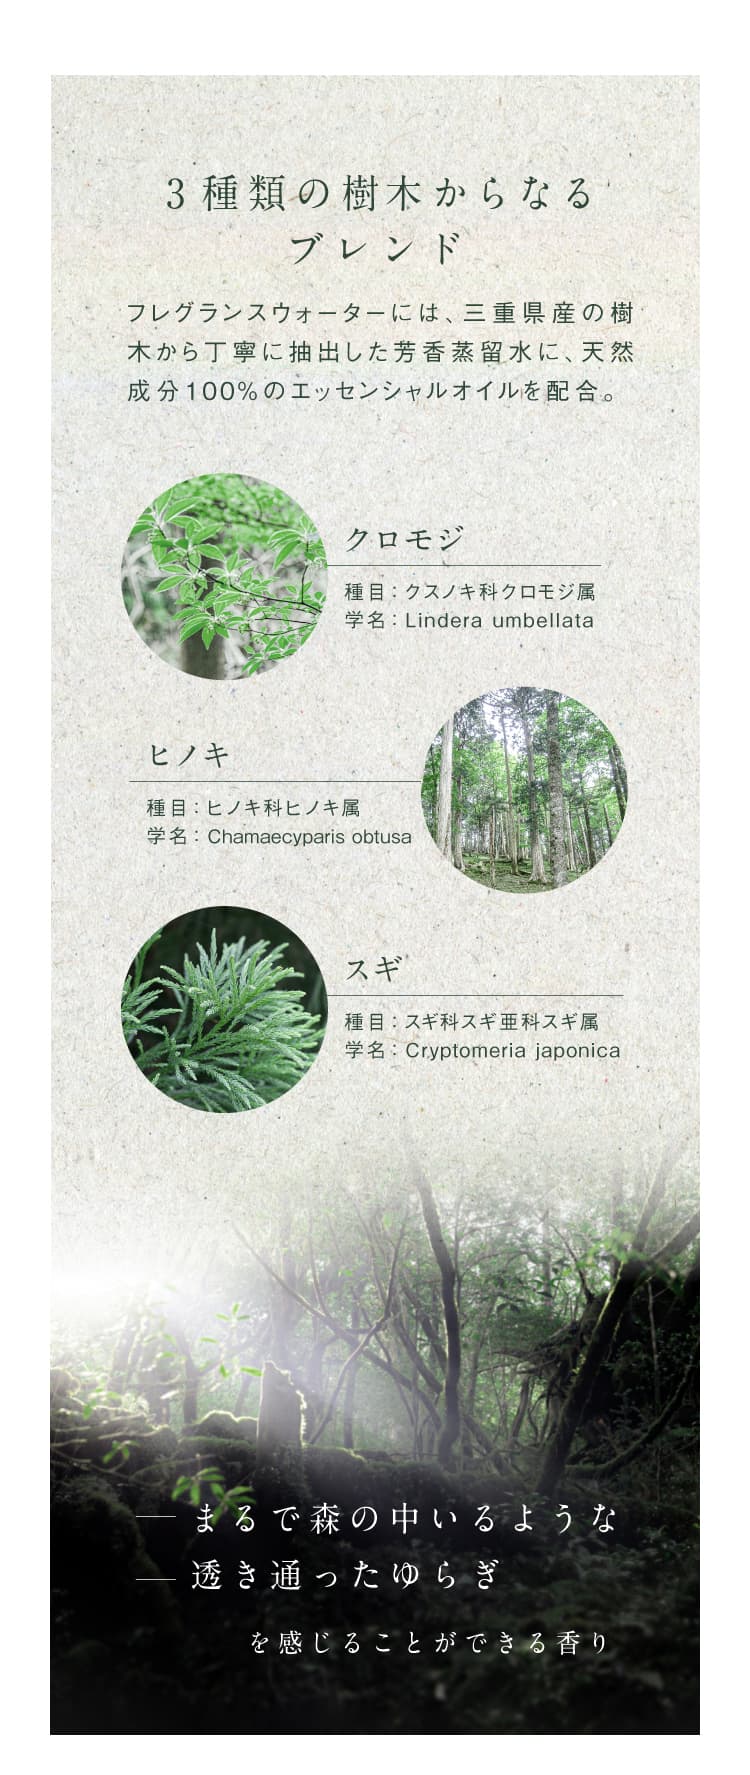 フレグランスウォーターは、3種類の樹木からなるブレンド。天然成分100%のエッセンシャルオイルを配合。